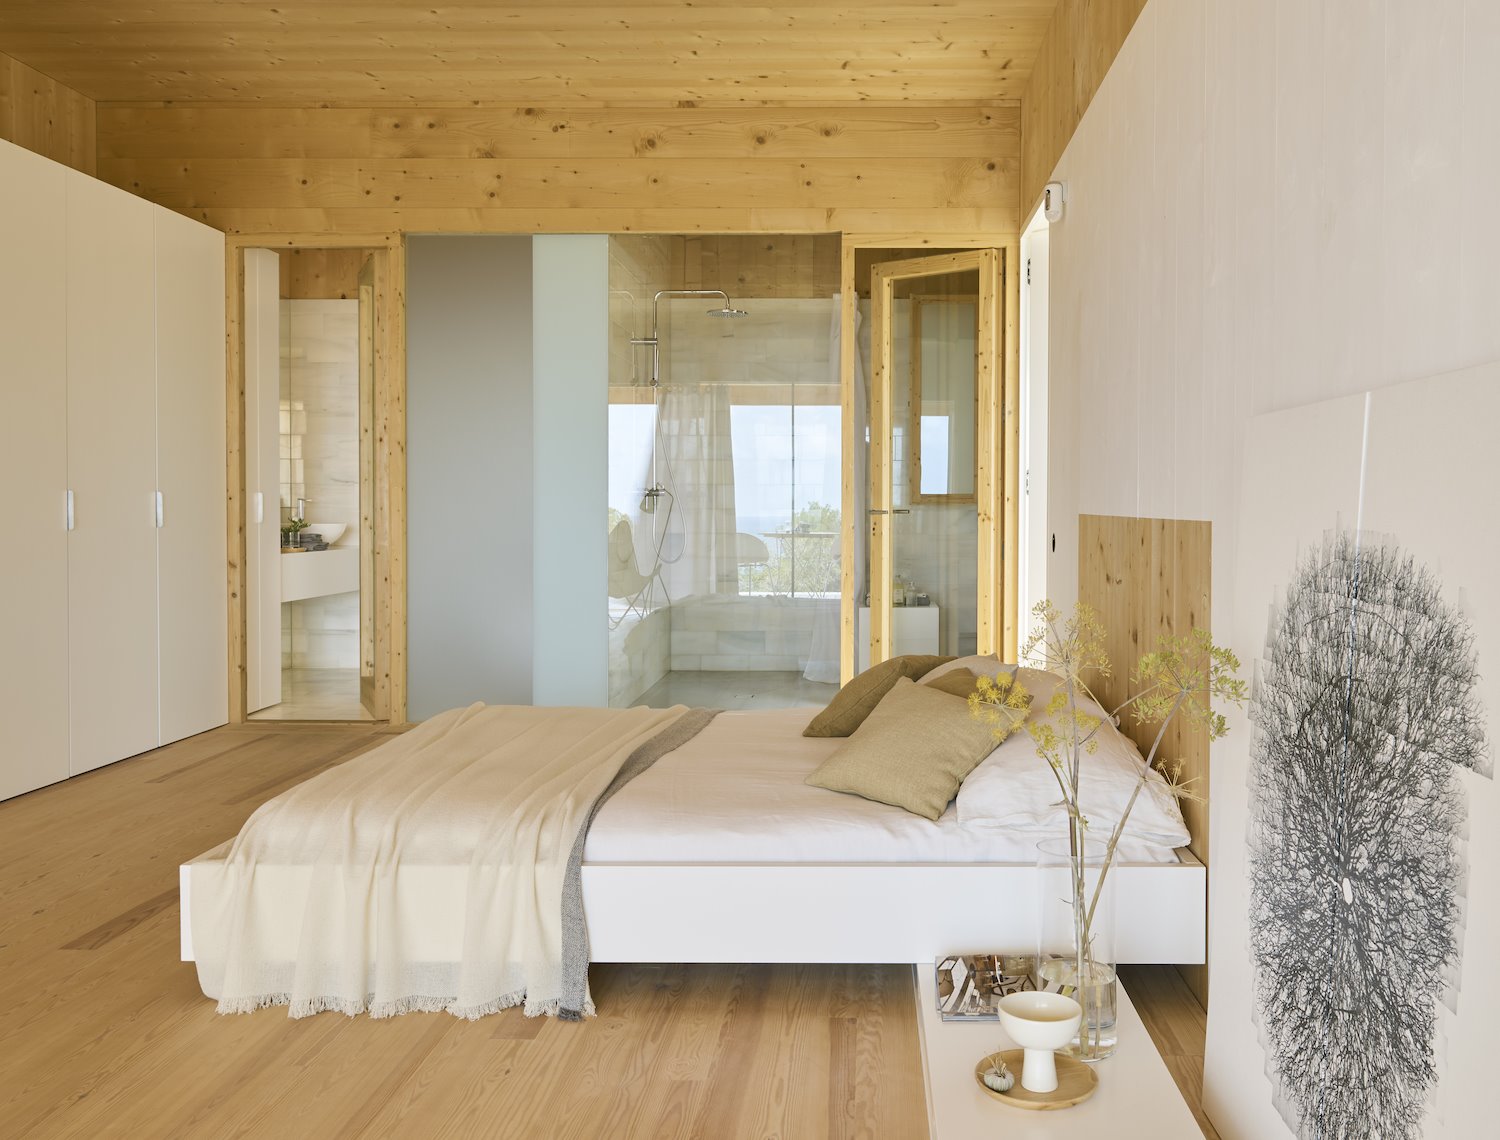 Dormitorio de una casa en madera natural con sabanas de lino y puertas de cristal